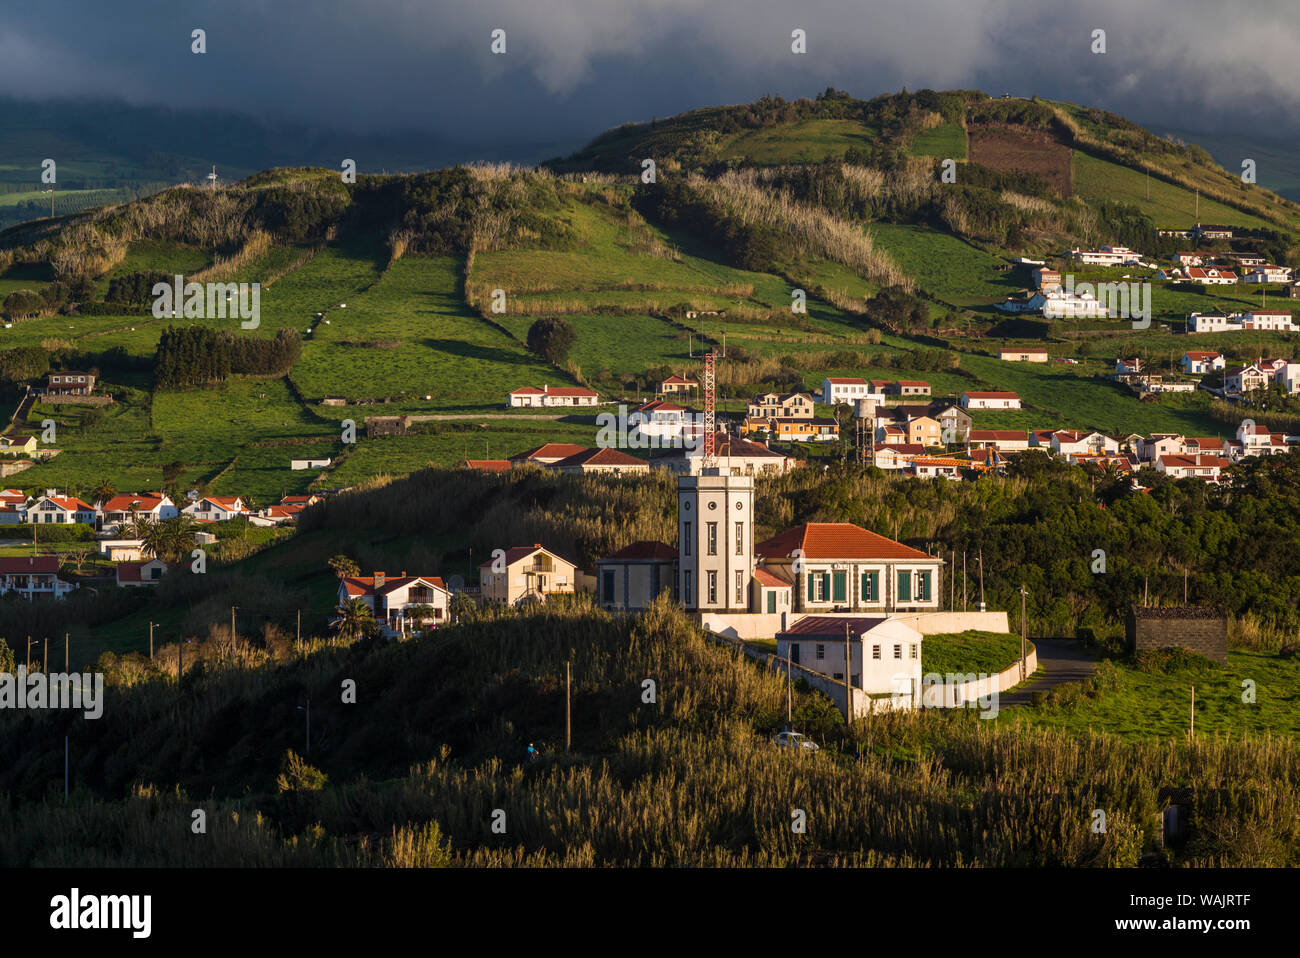 Portugal, Azores, Faial Island, Horta. Observatorio Principe Alberto de Monaco observatory Stock Photo